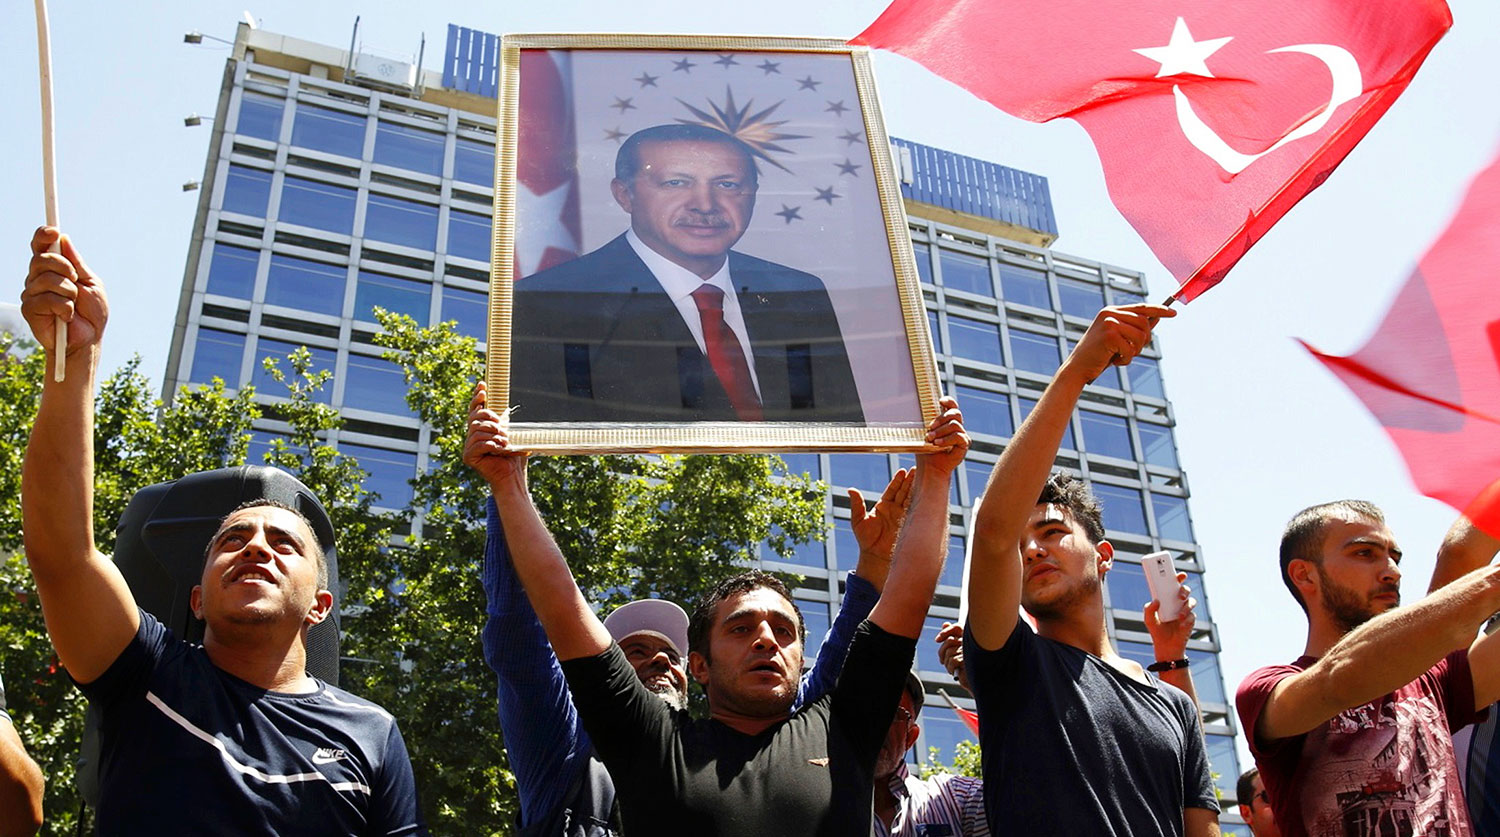 Военный переворот в Турции